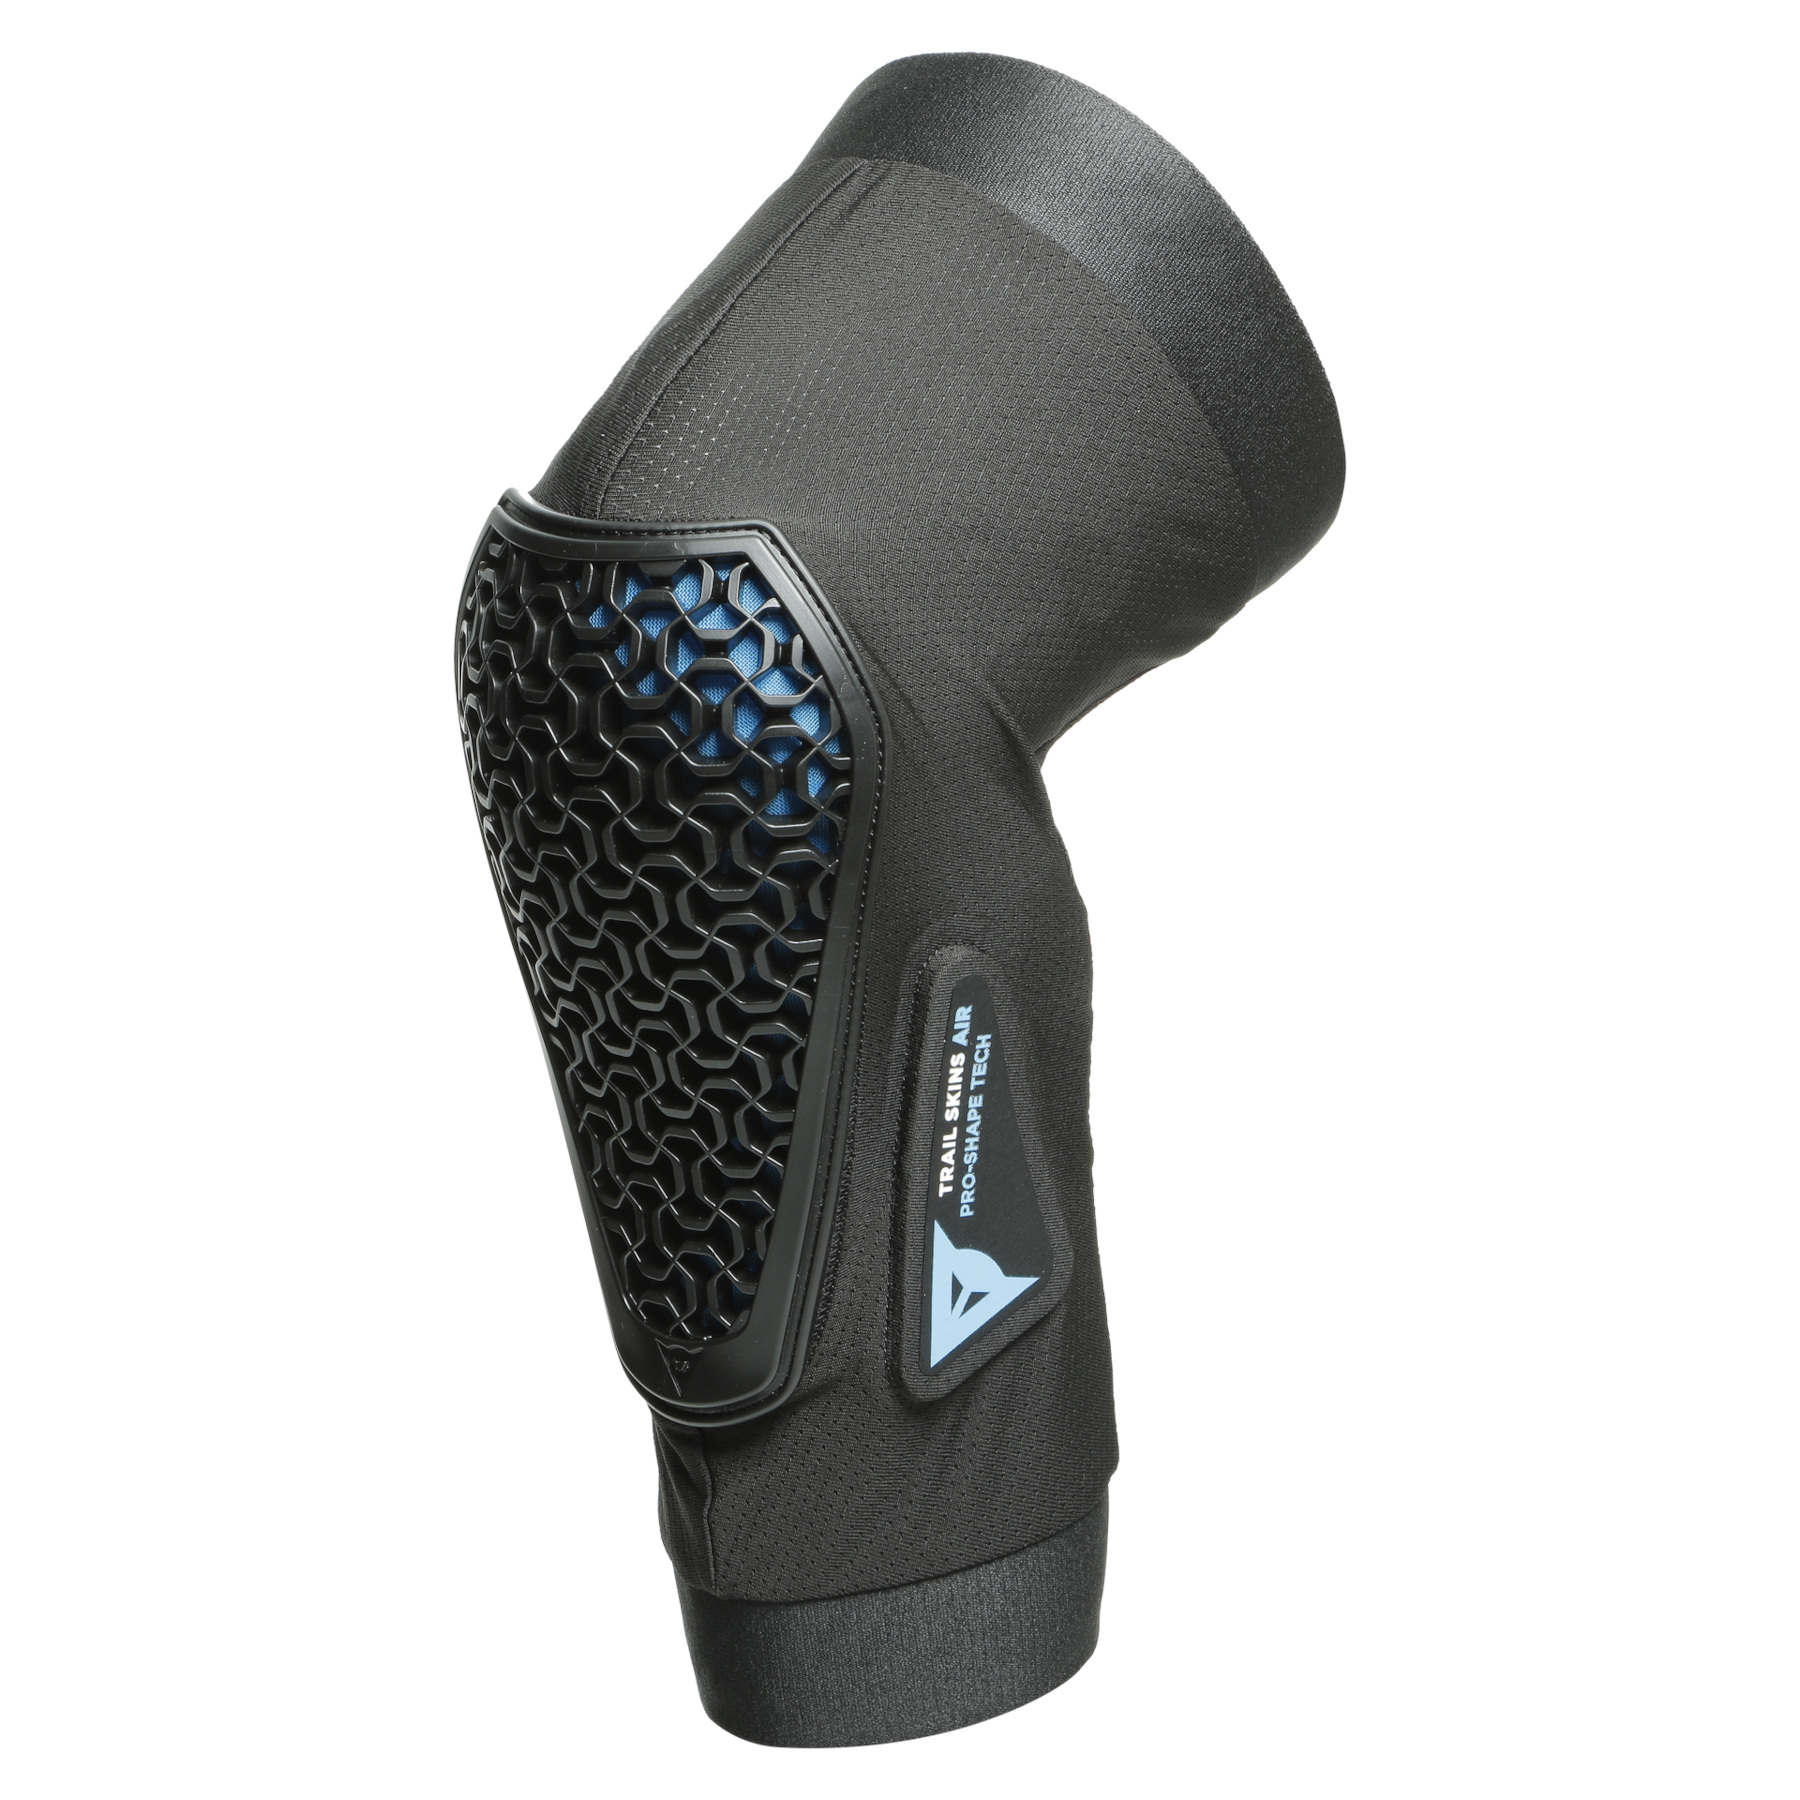 Productfoto van Dainese Trail Skins Air Kniebeschermers - zwart